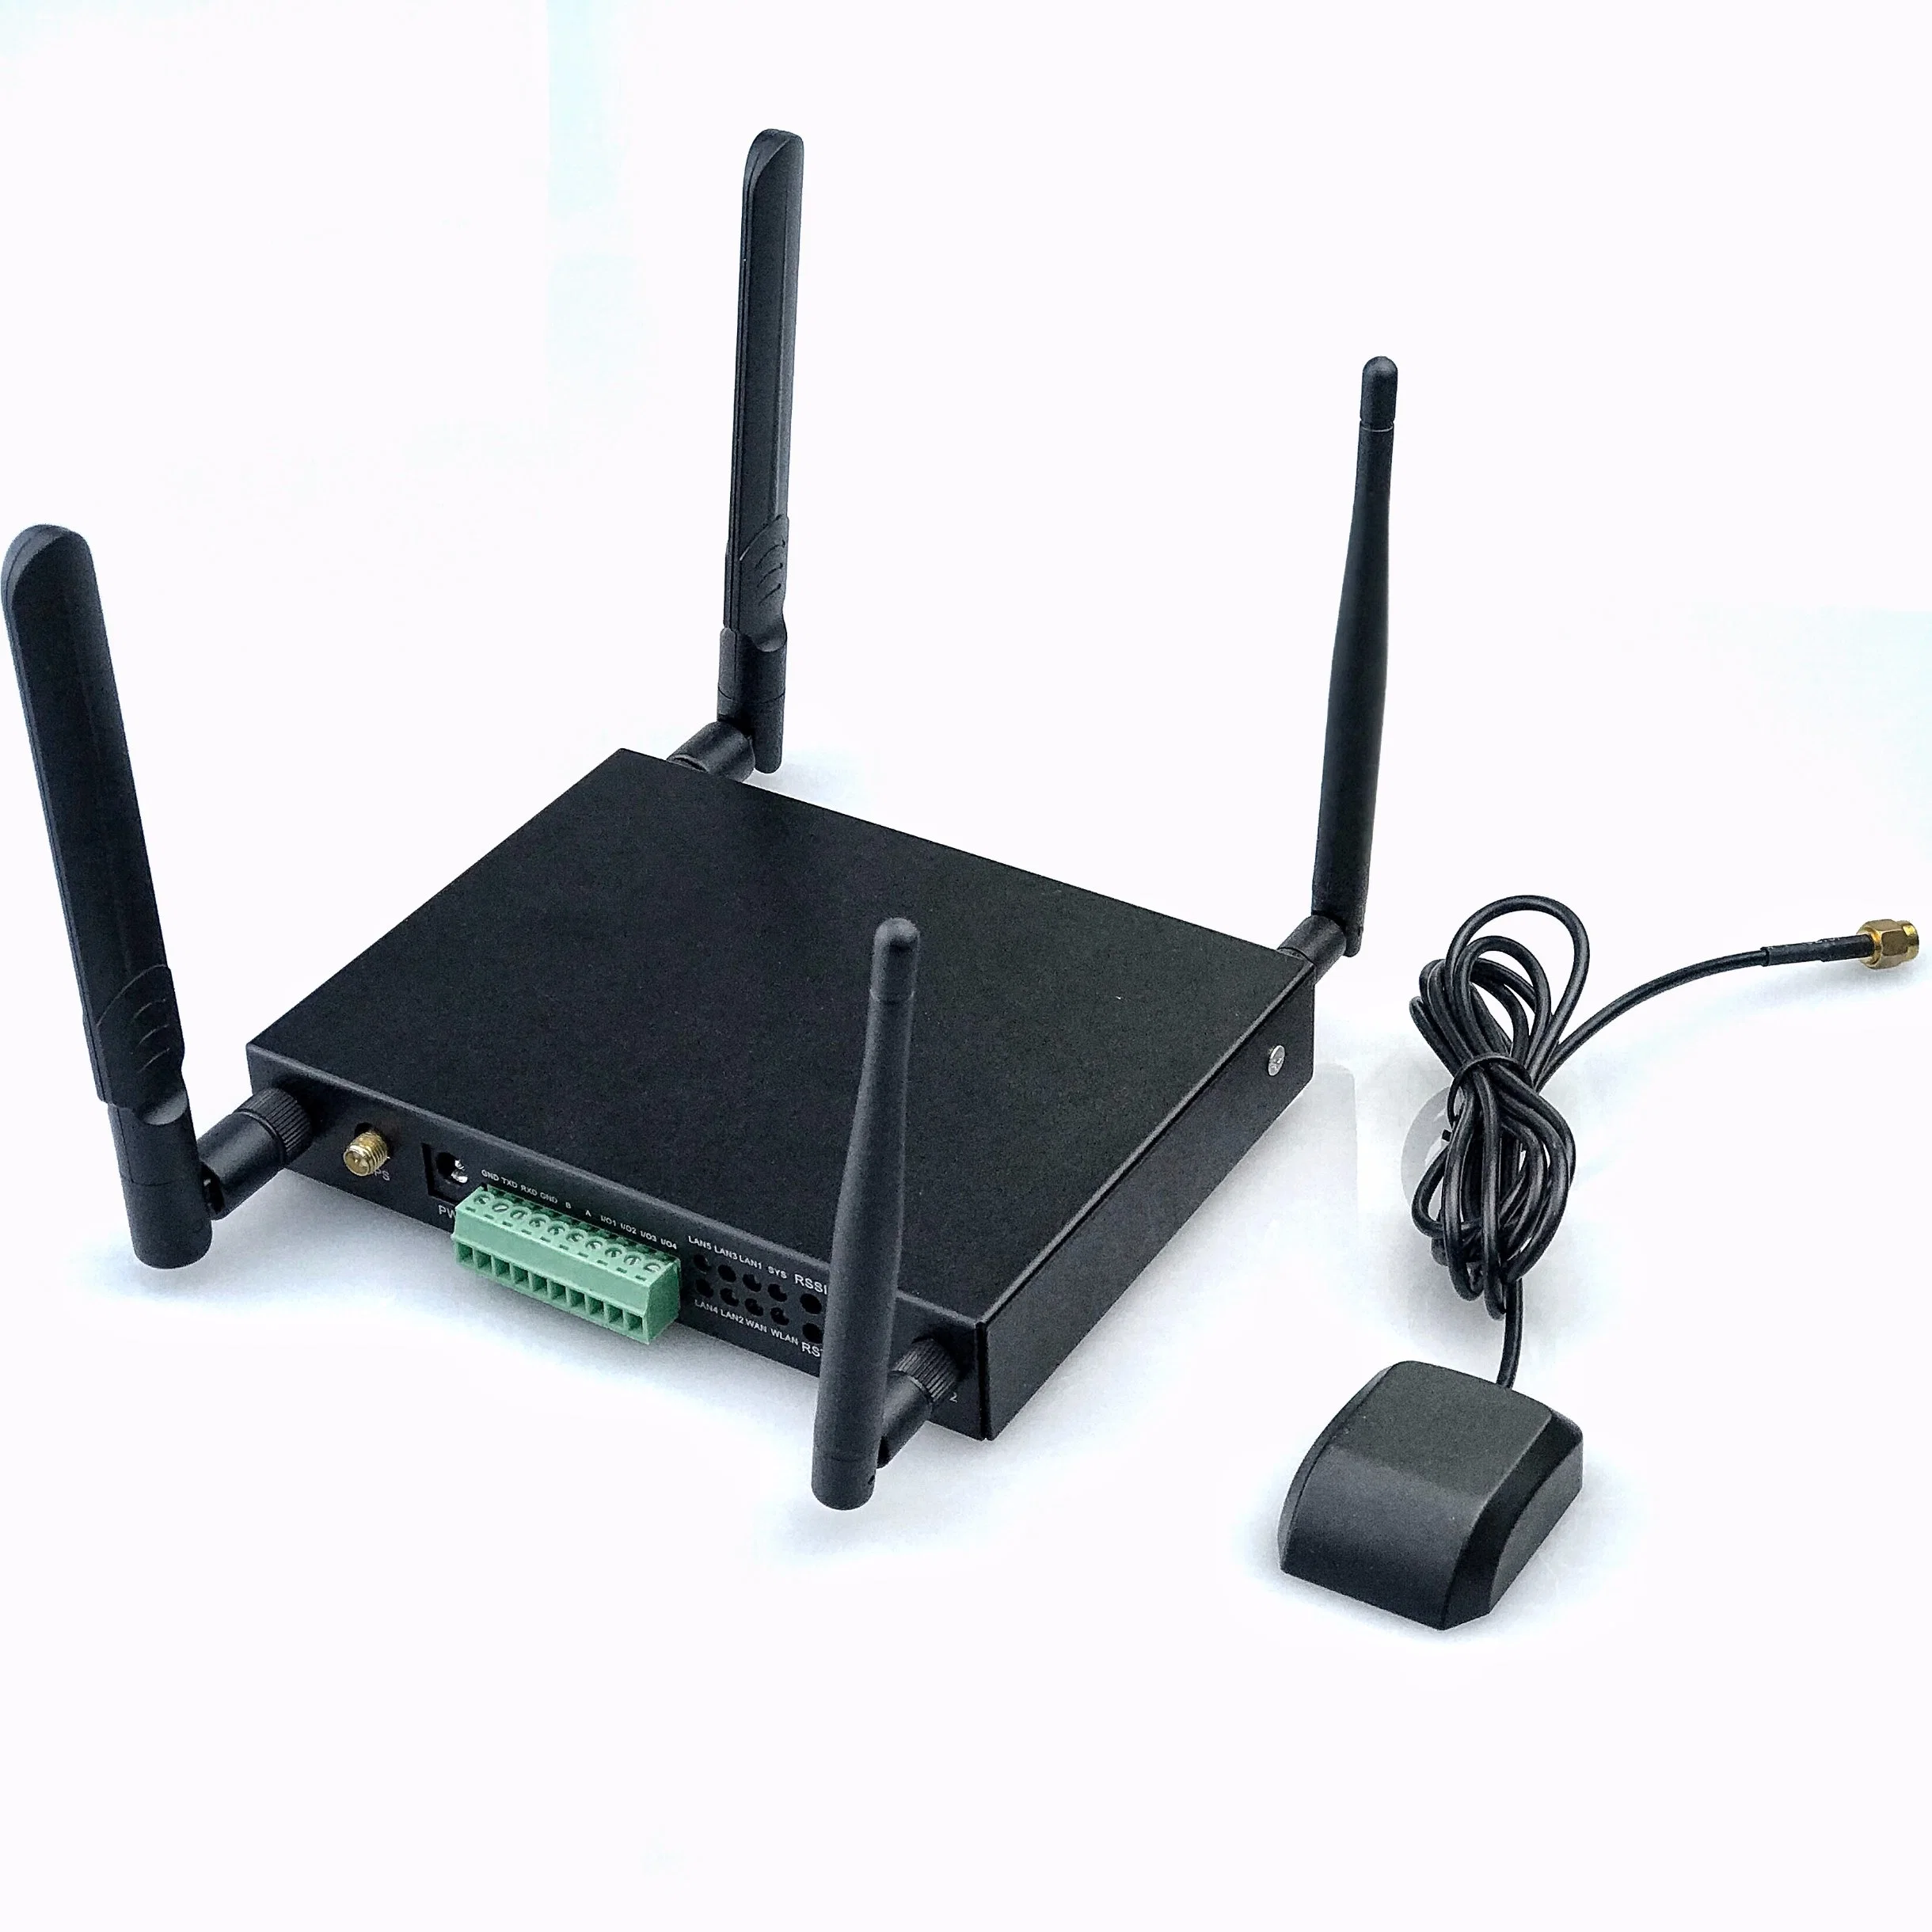 Новый M2m-промышленных сотовой беспроводной сети маршрутизатора 4G маршрутизатор сотовой связи с двумя SIM-карты